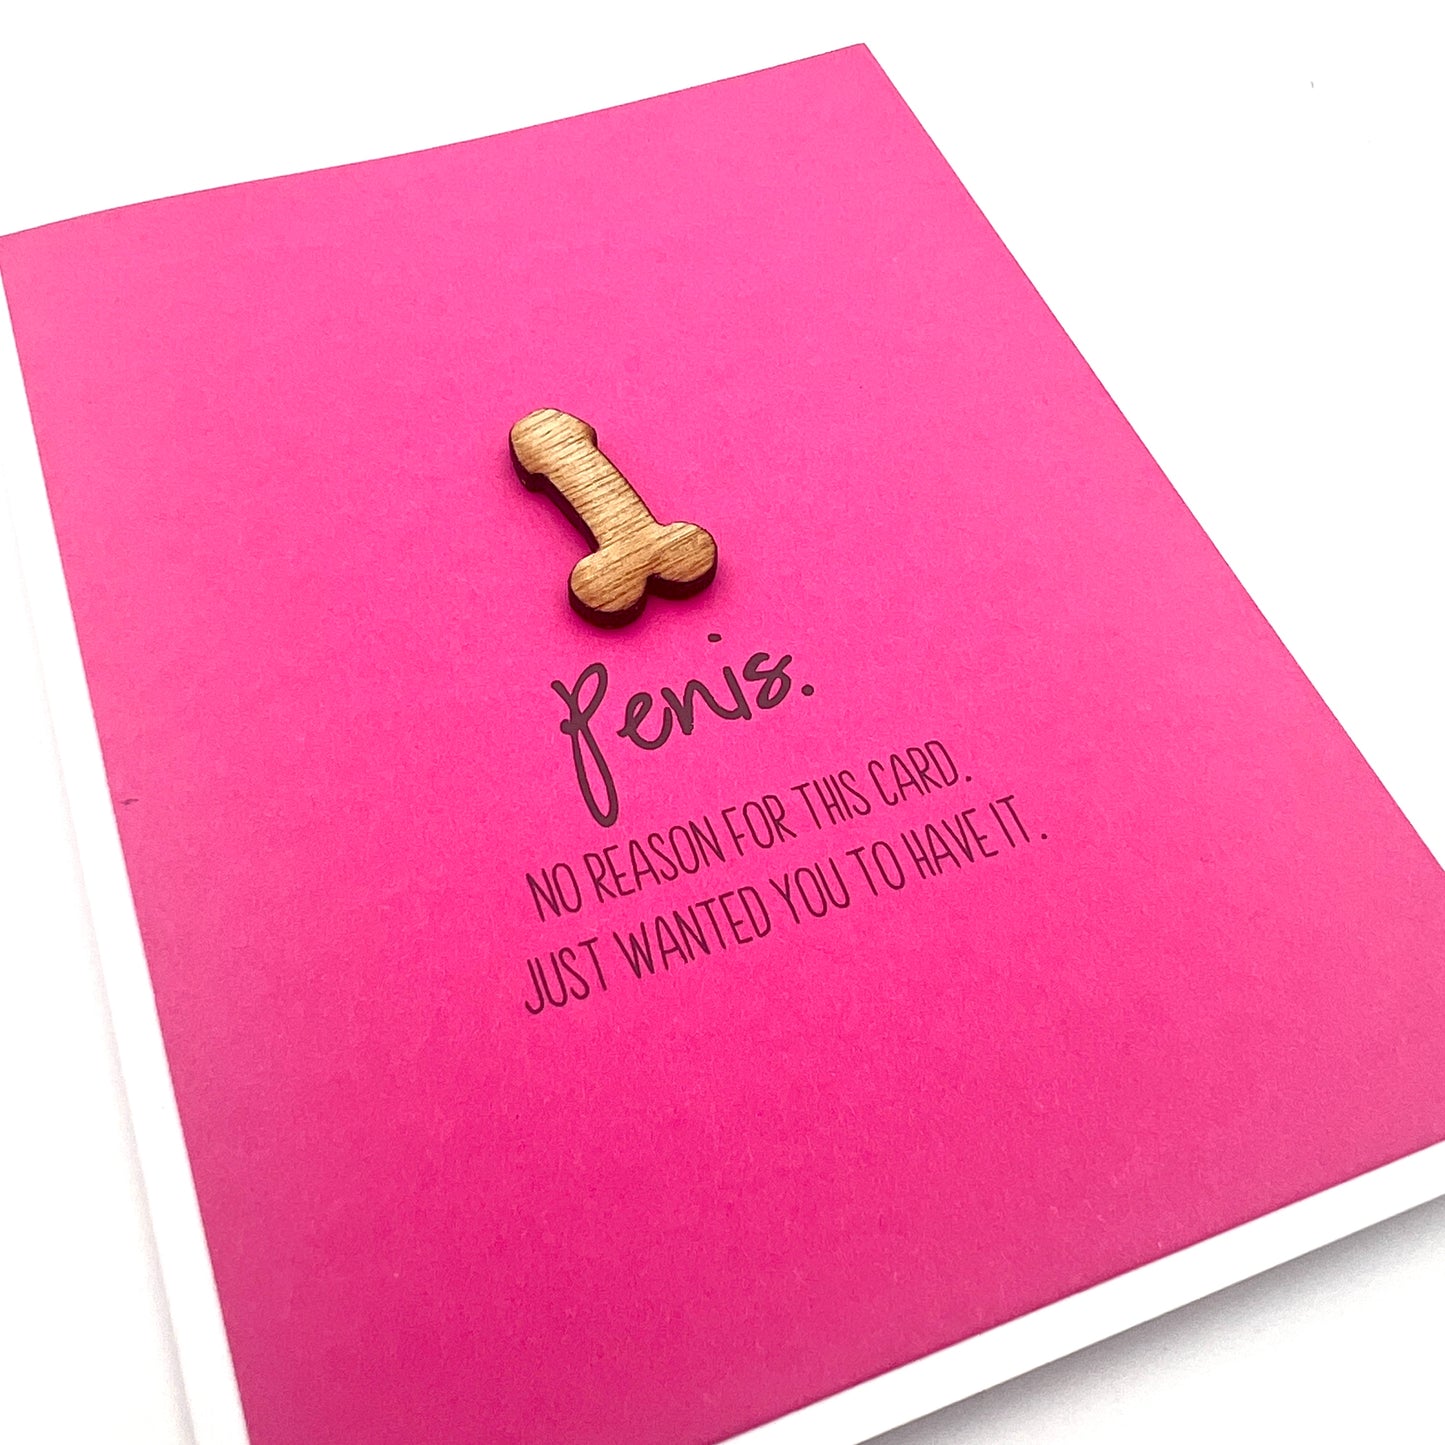 Penis No Reason card